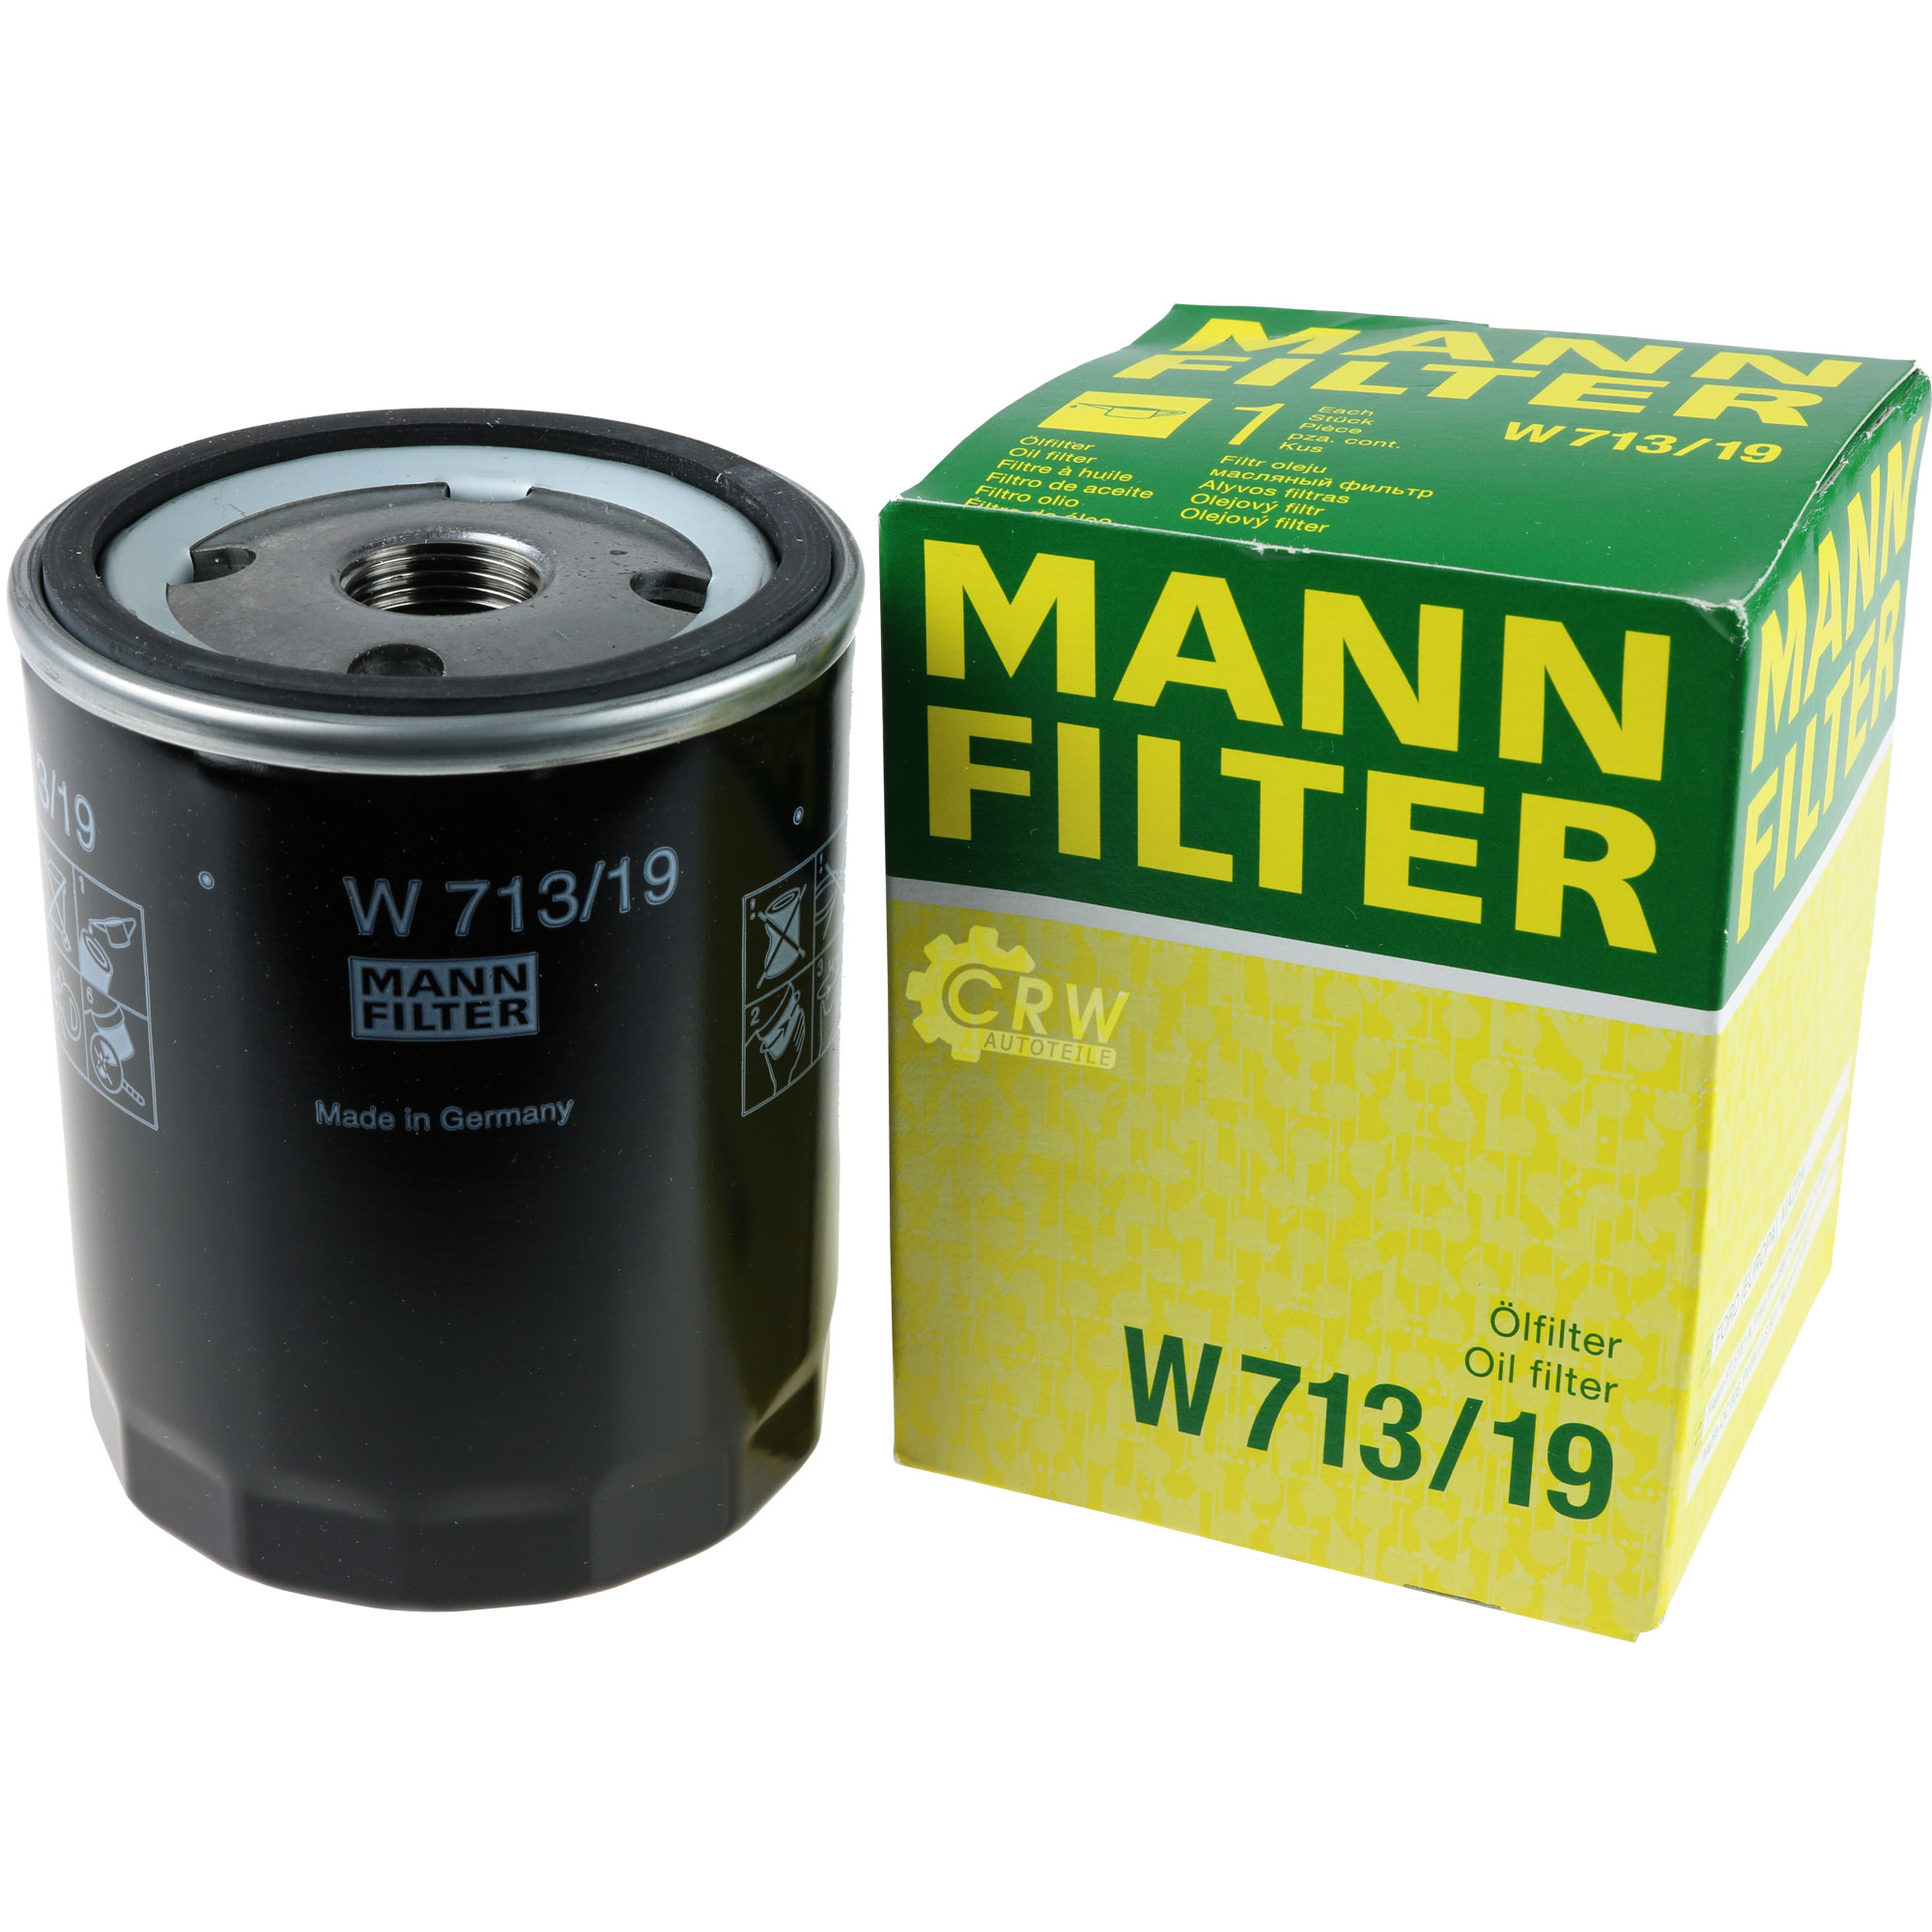 MANN-FILTER Ölfilter W 713/19 Oil Filter